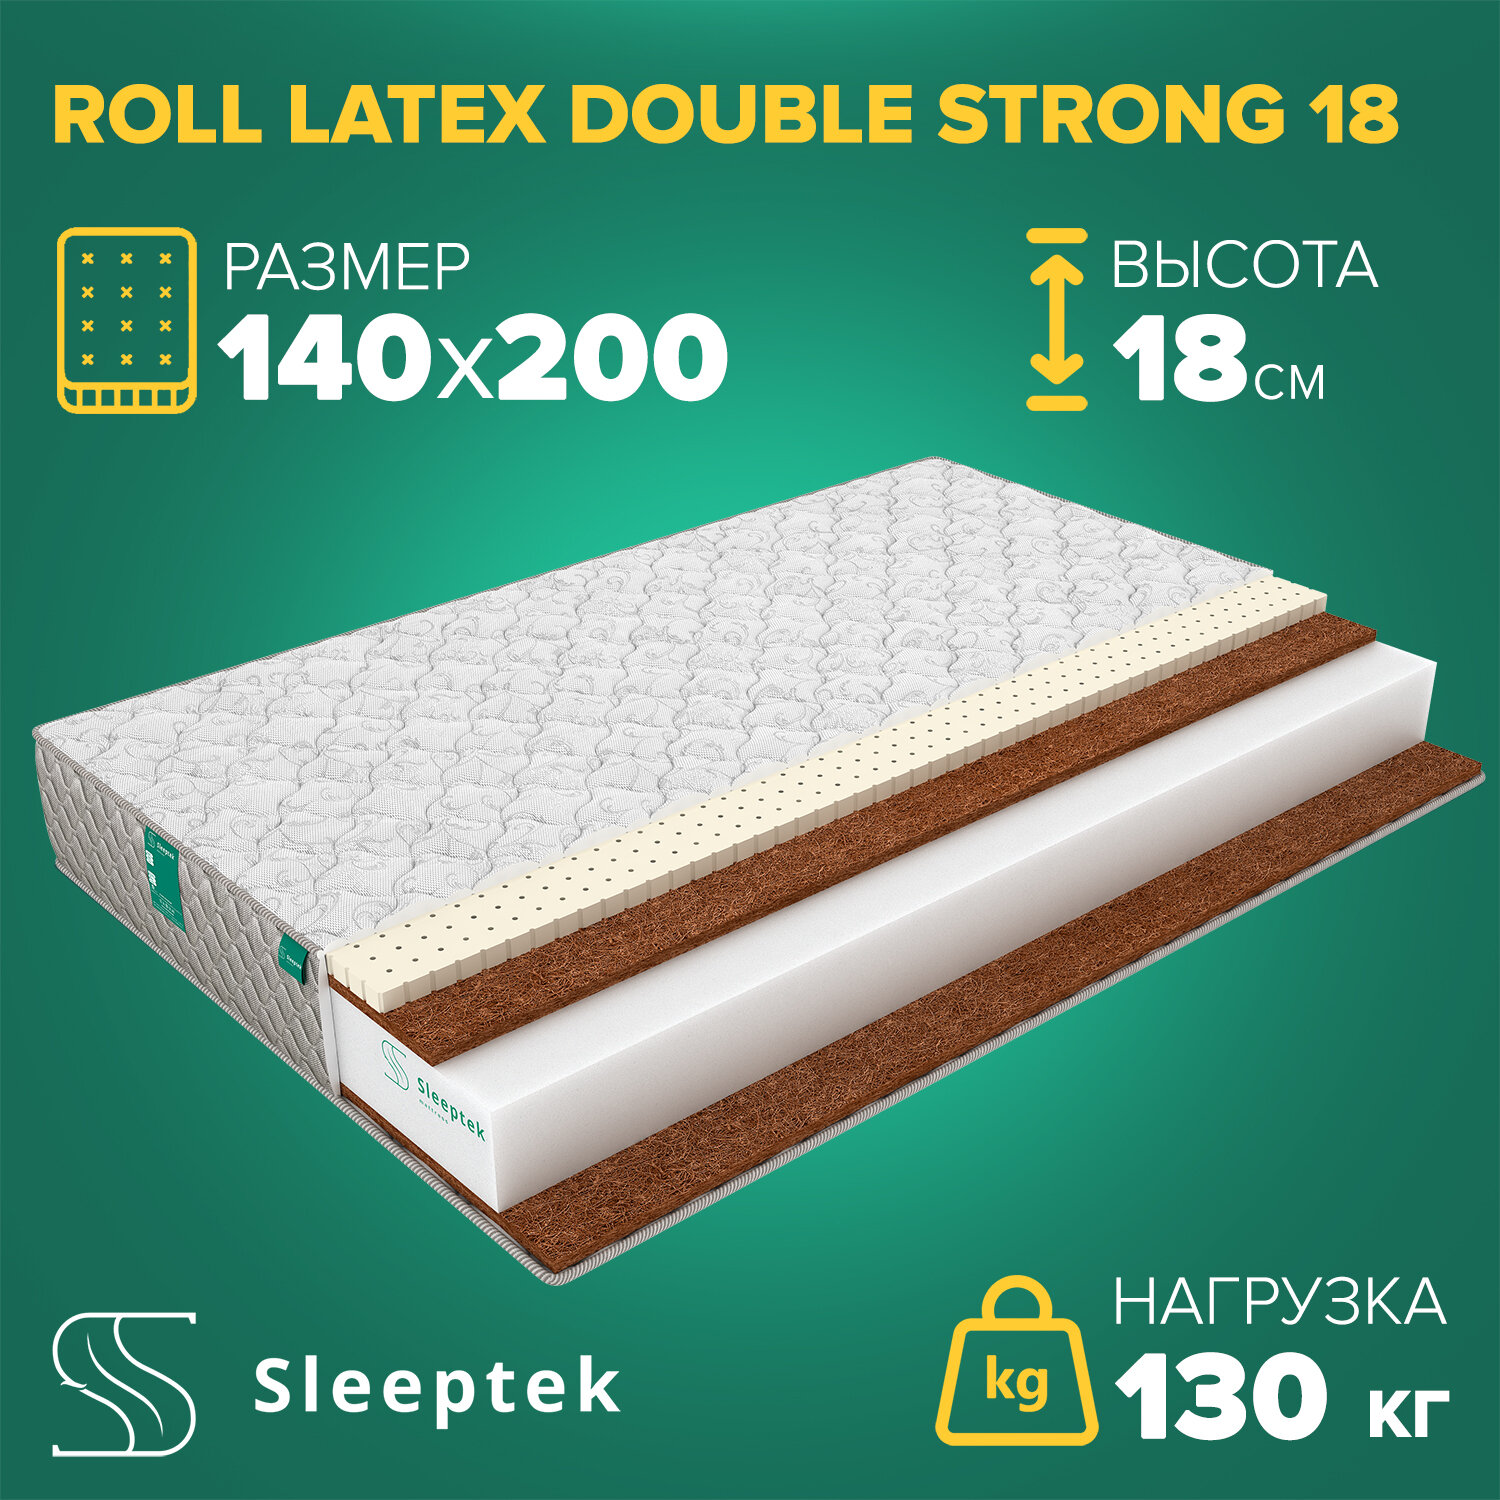 Матрас Sleeptek Roll Latex DoubleStrong 18 140х200